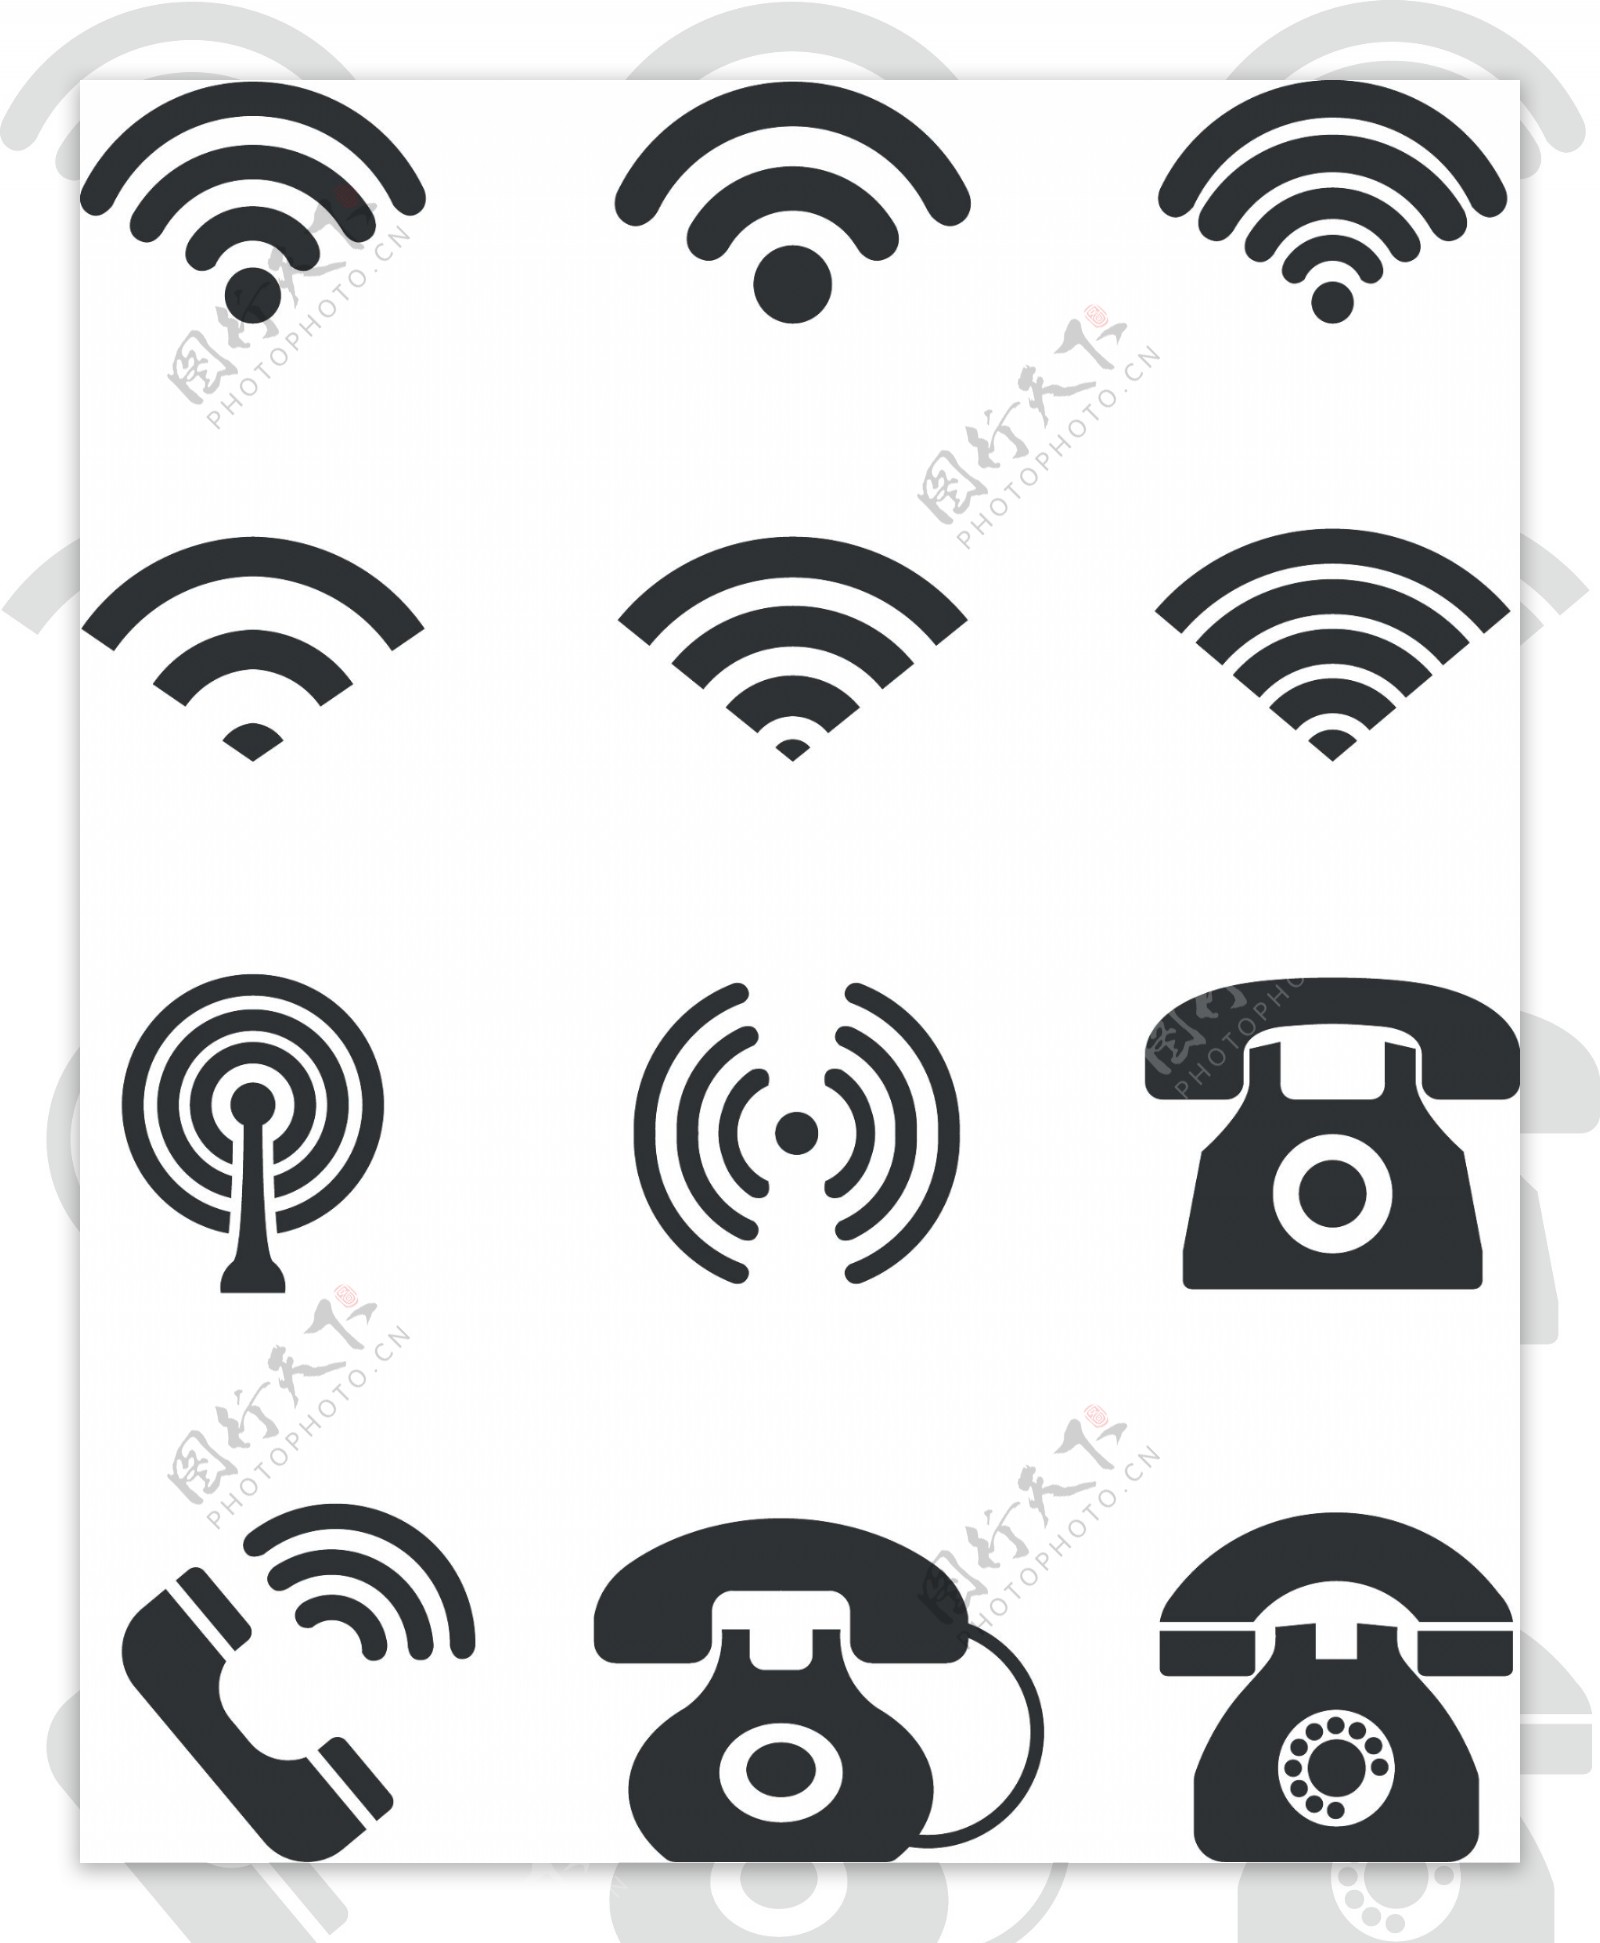 矢量wifi及电话图标